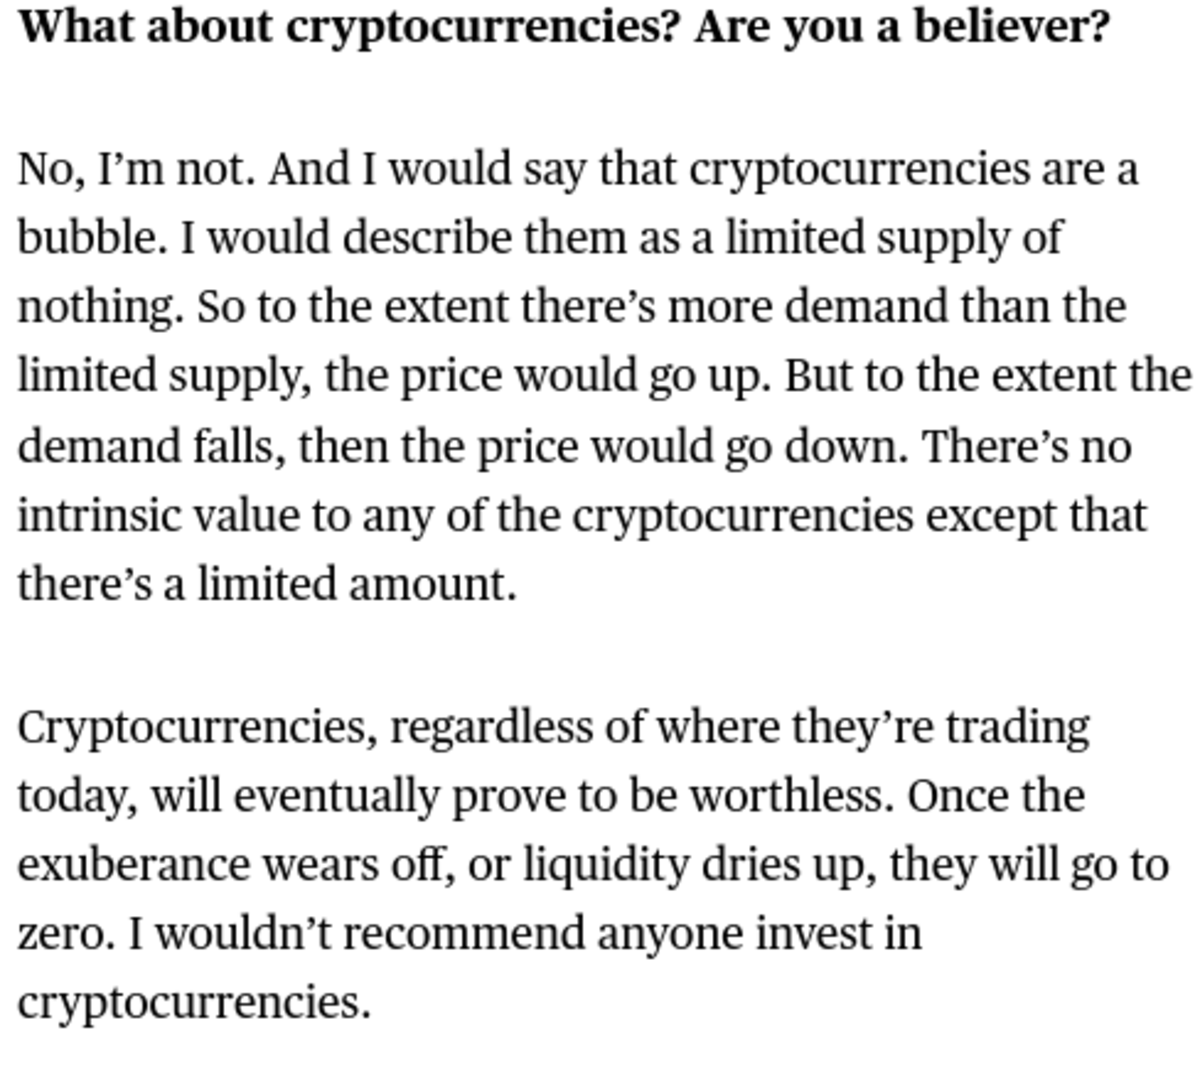 image describing cryptocurrencies as a bad bubble excerpt.